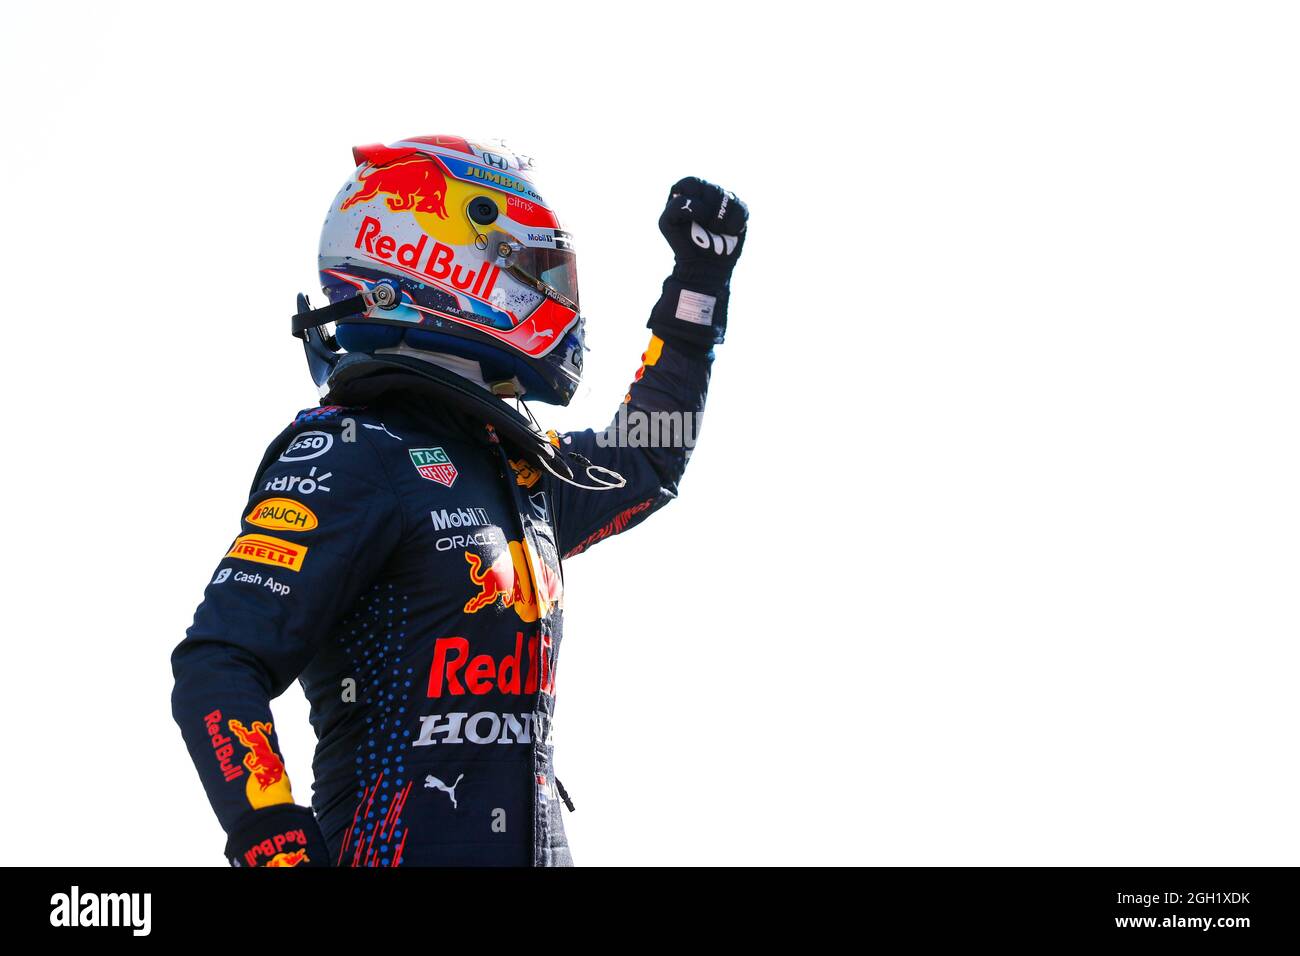 Max Verstappen (NLD) Red Bull Racing celebra la sua pole position in qualifica di parc ferme. Gran Premio d'Olanda, sabato 4 settembre 2021. Zandvoort, Paesi Bassi. FIA Pool Image solo per uso editoriale Foto Stock